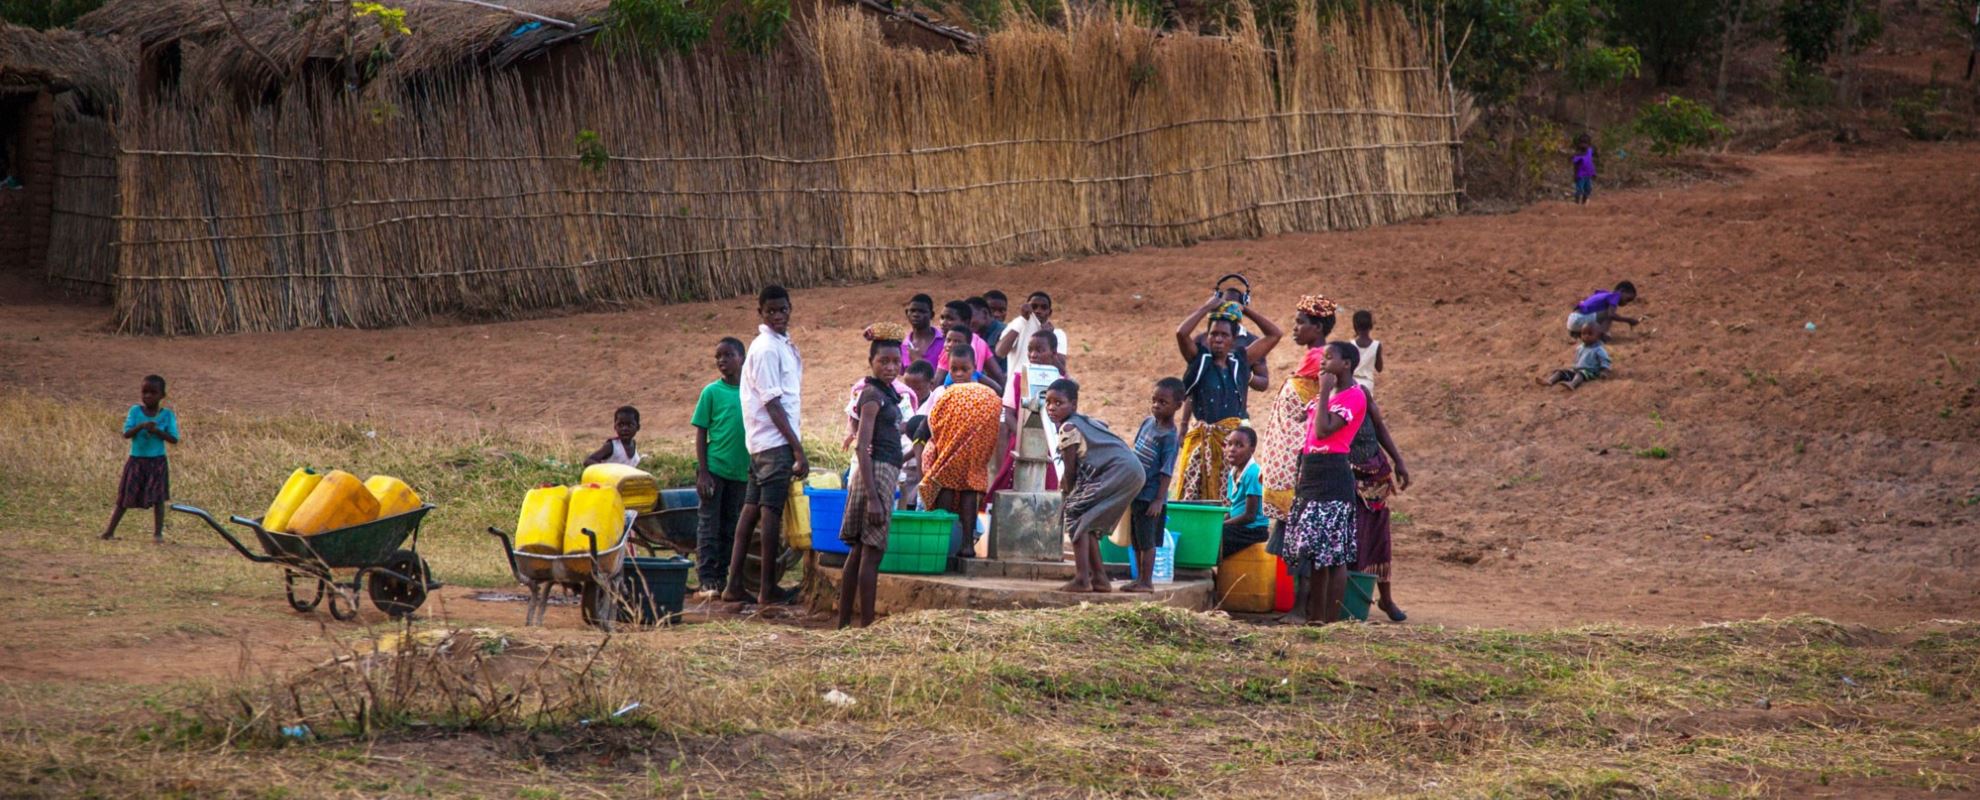 40 prosent av barna i Malawi er engasjert i en form for arbeid, for eksempel med å skaffe vann og mat til familien. Foto: George Kurian